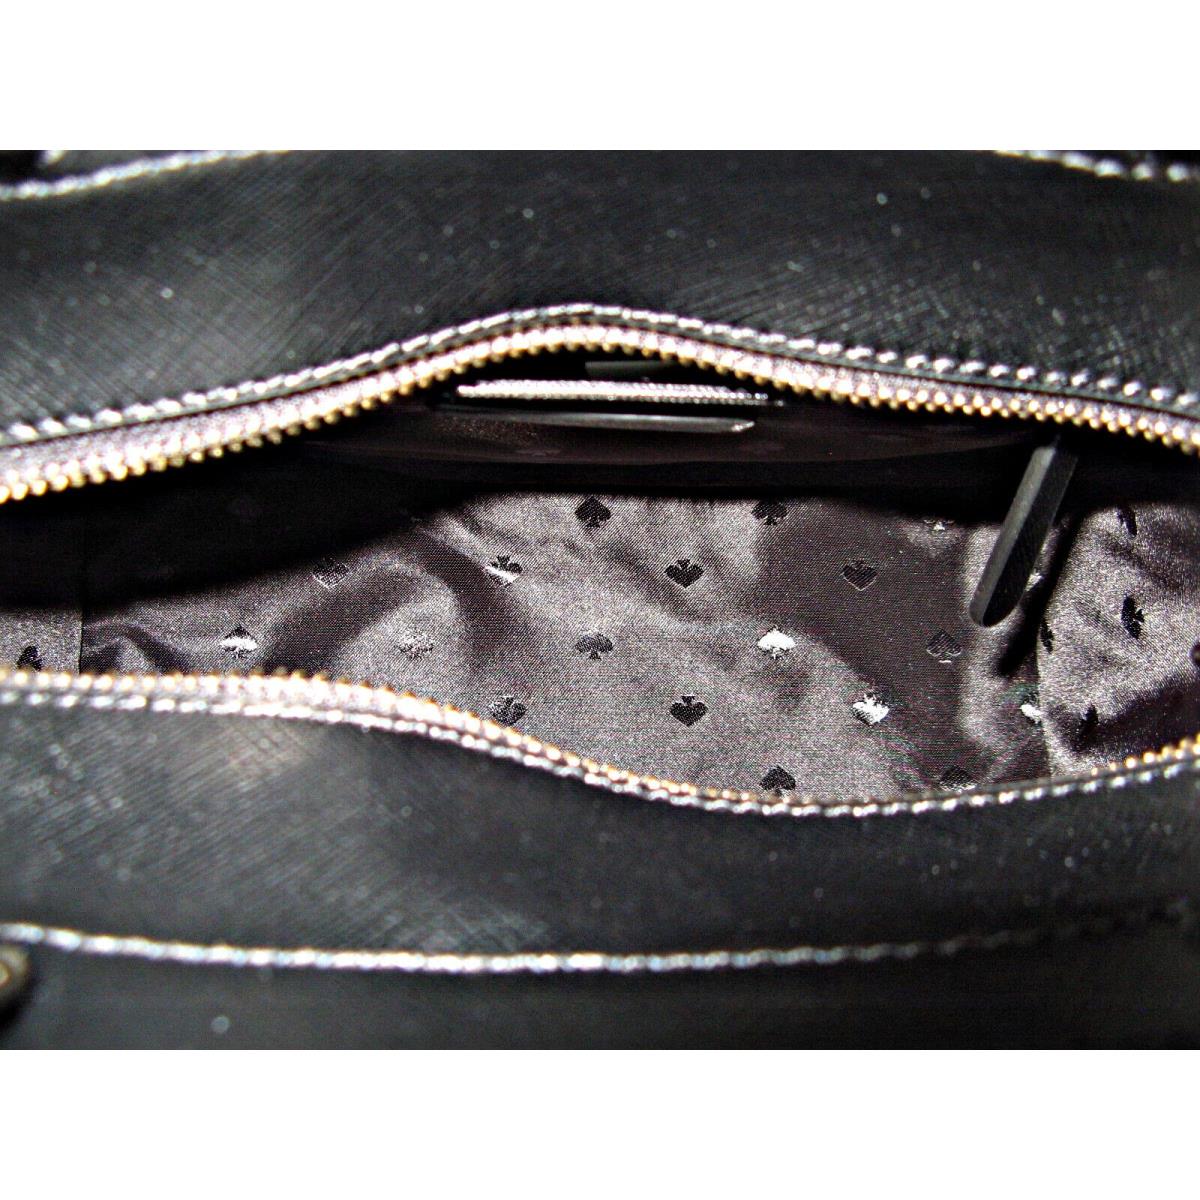 Kate Spade Staci Medium Saffiano Leather Top Zip Satchel Purse Crossbody  Black 767883702352